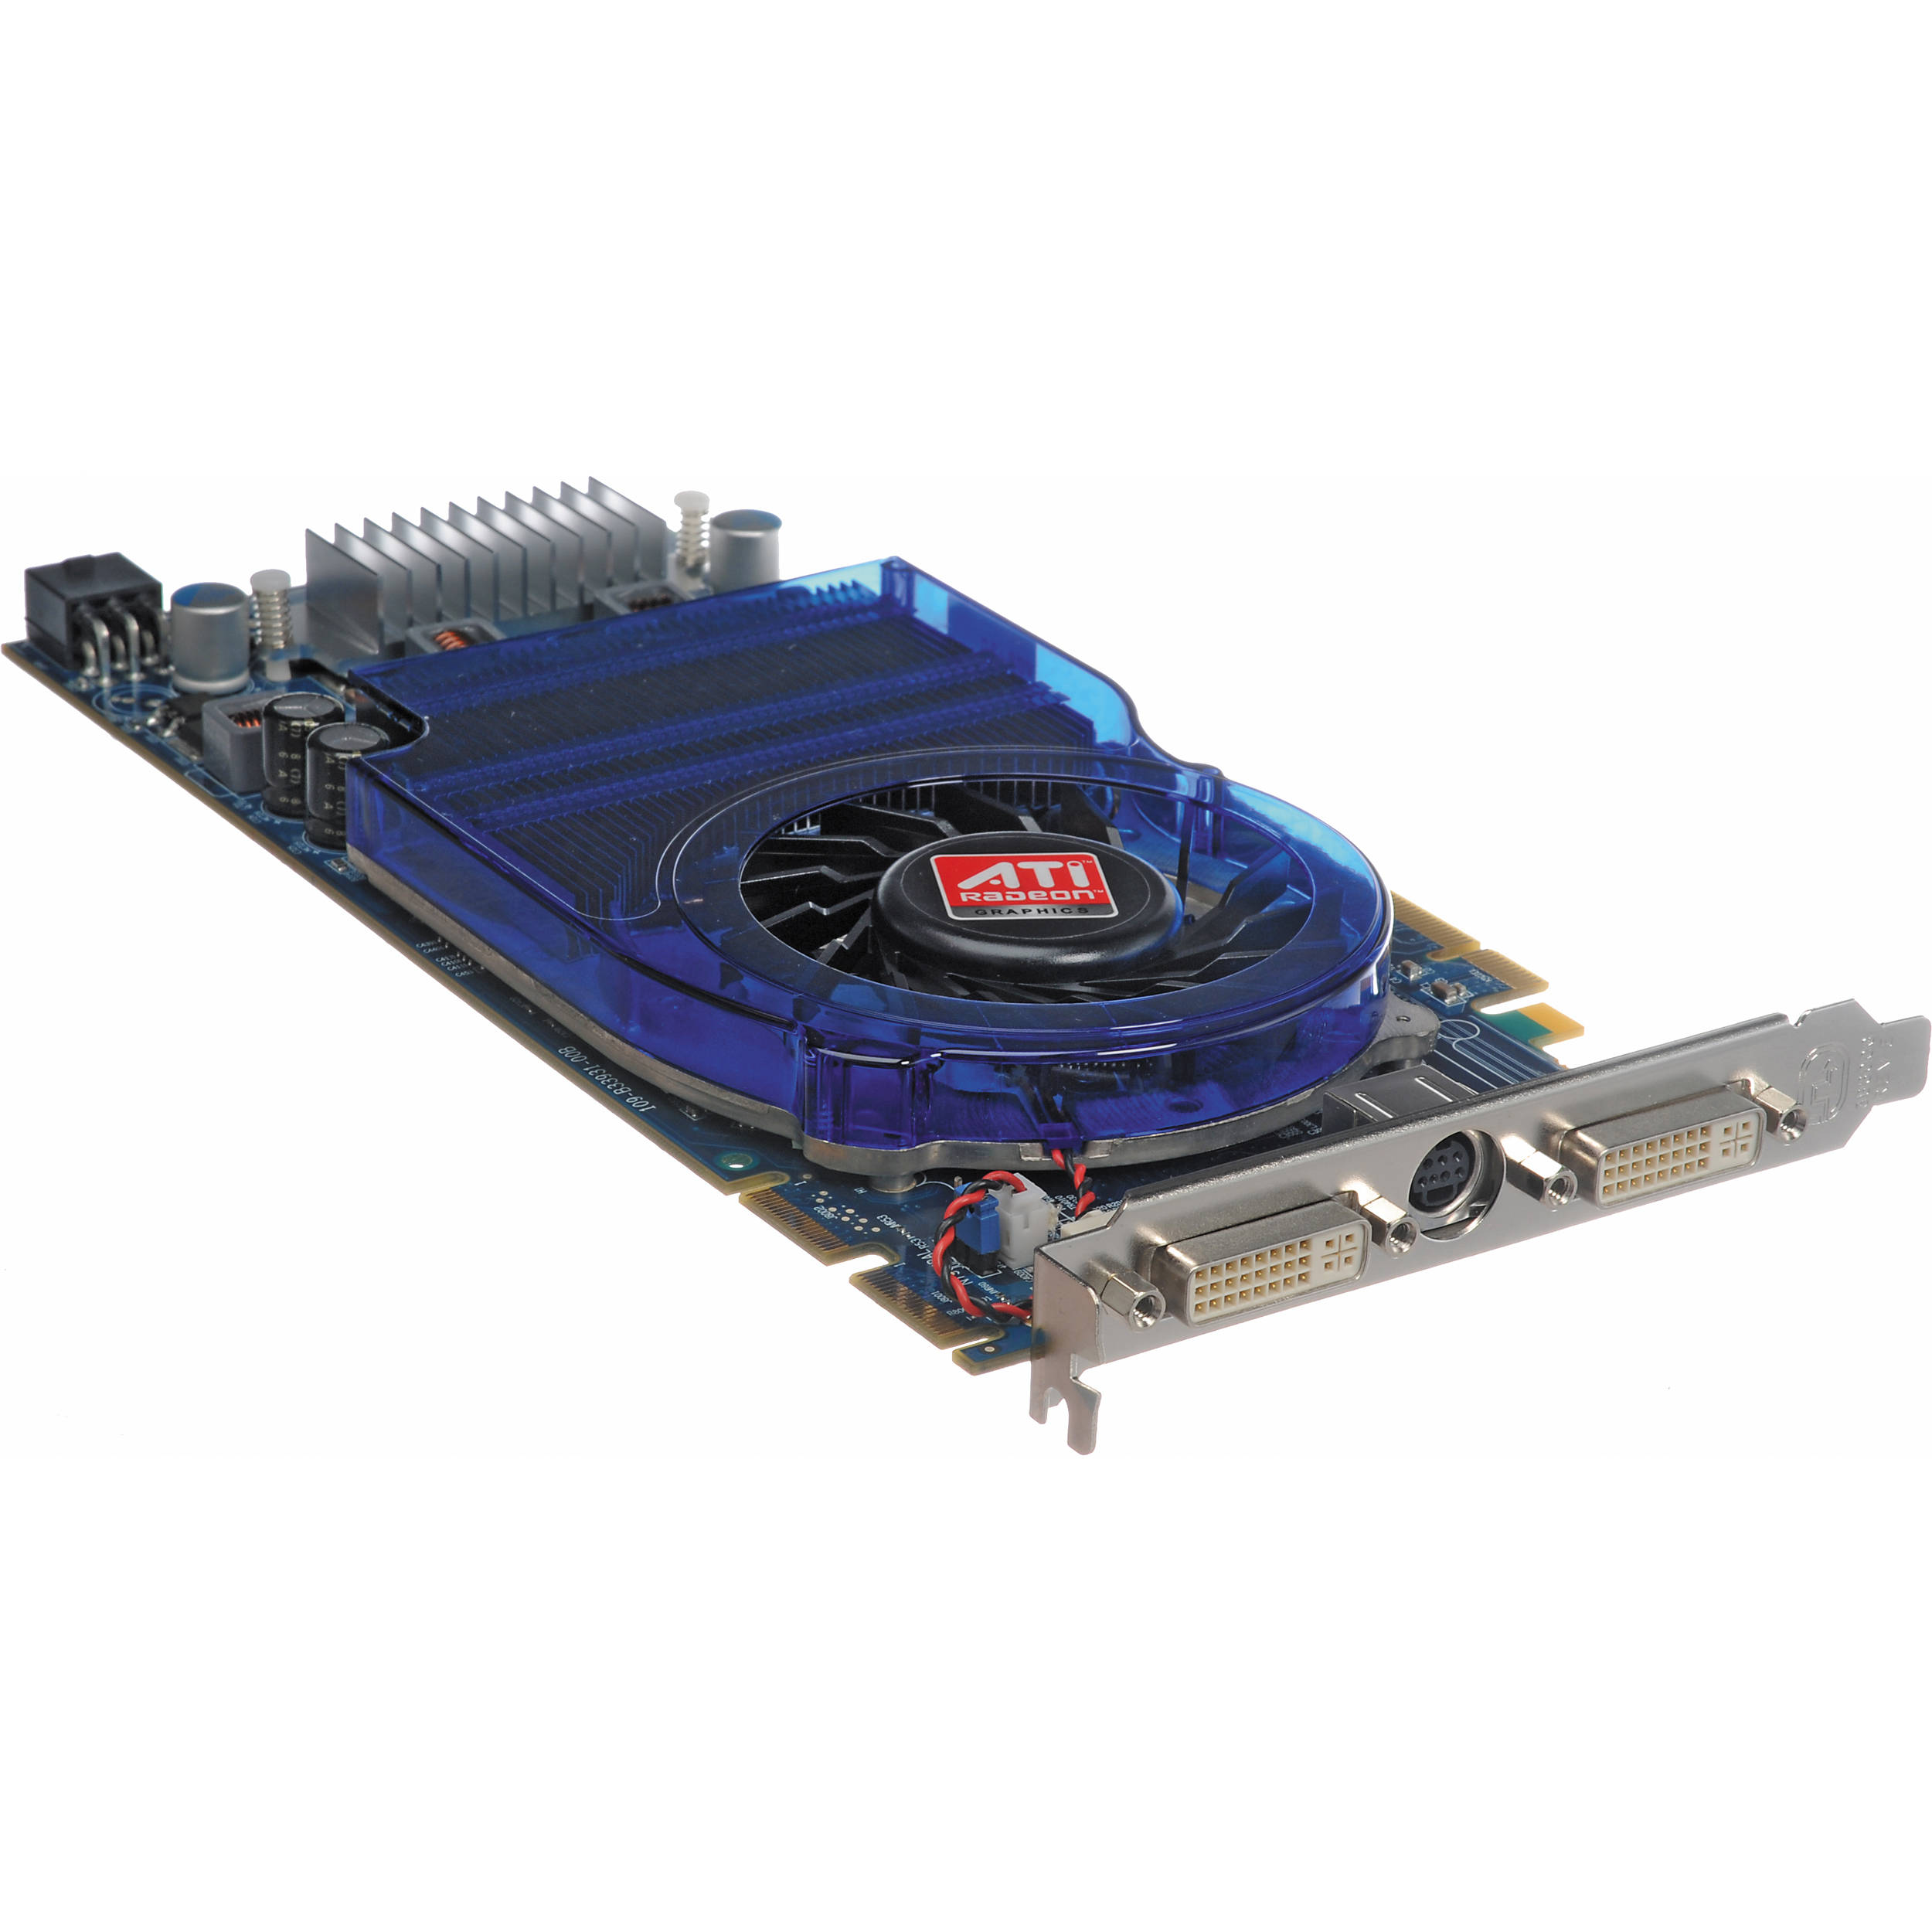 ATI Radeon HD 3870 PCI Express 2.0 